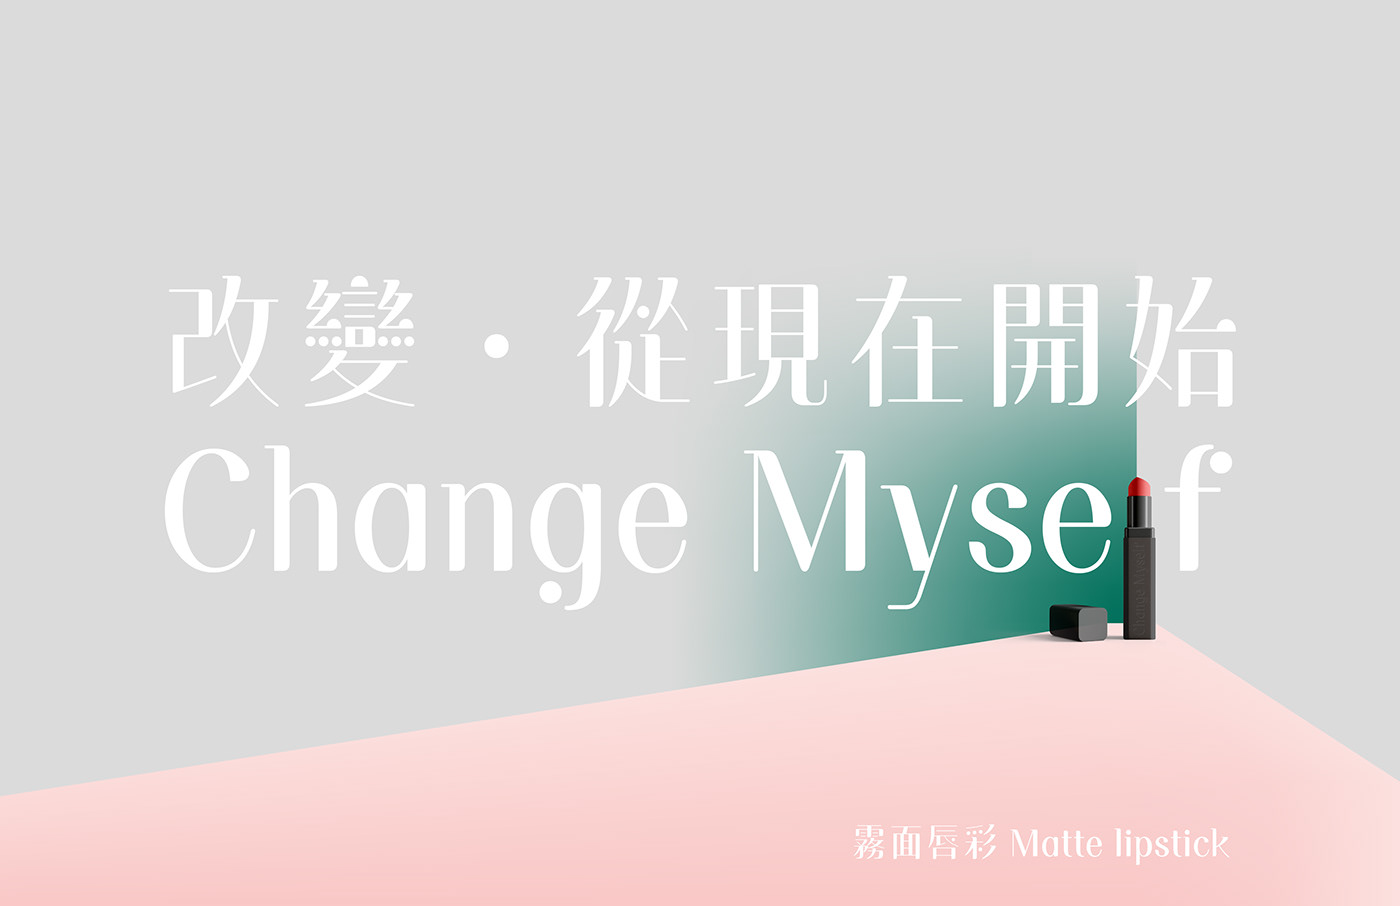 字型 字體 字体 typography   Logotype chinese 中文 日光 圆体